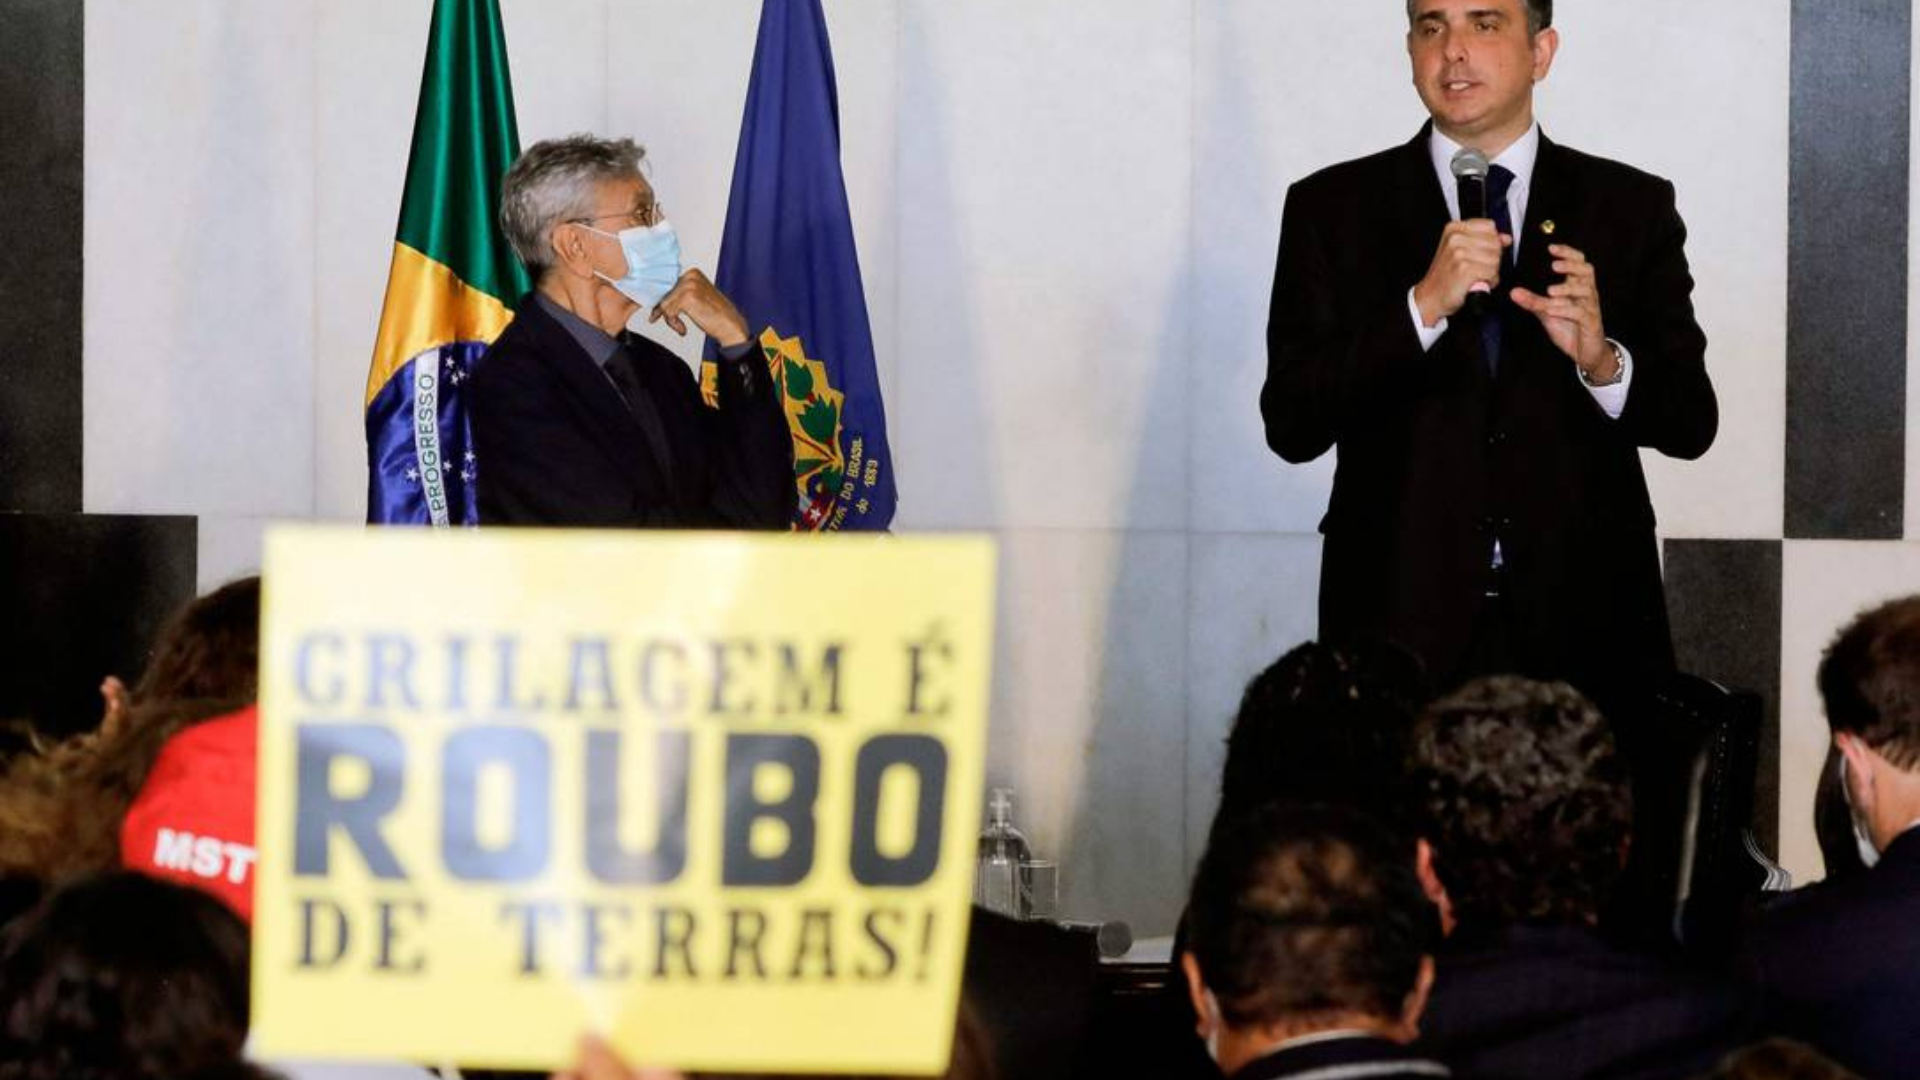 Caetano Veloso se encontra com Pacheco e faz pedido sobre meio ambiente. Cantor está de máscara e olha para o presidente do Senado, Rodrigo Pacheco.